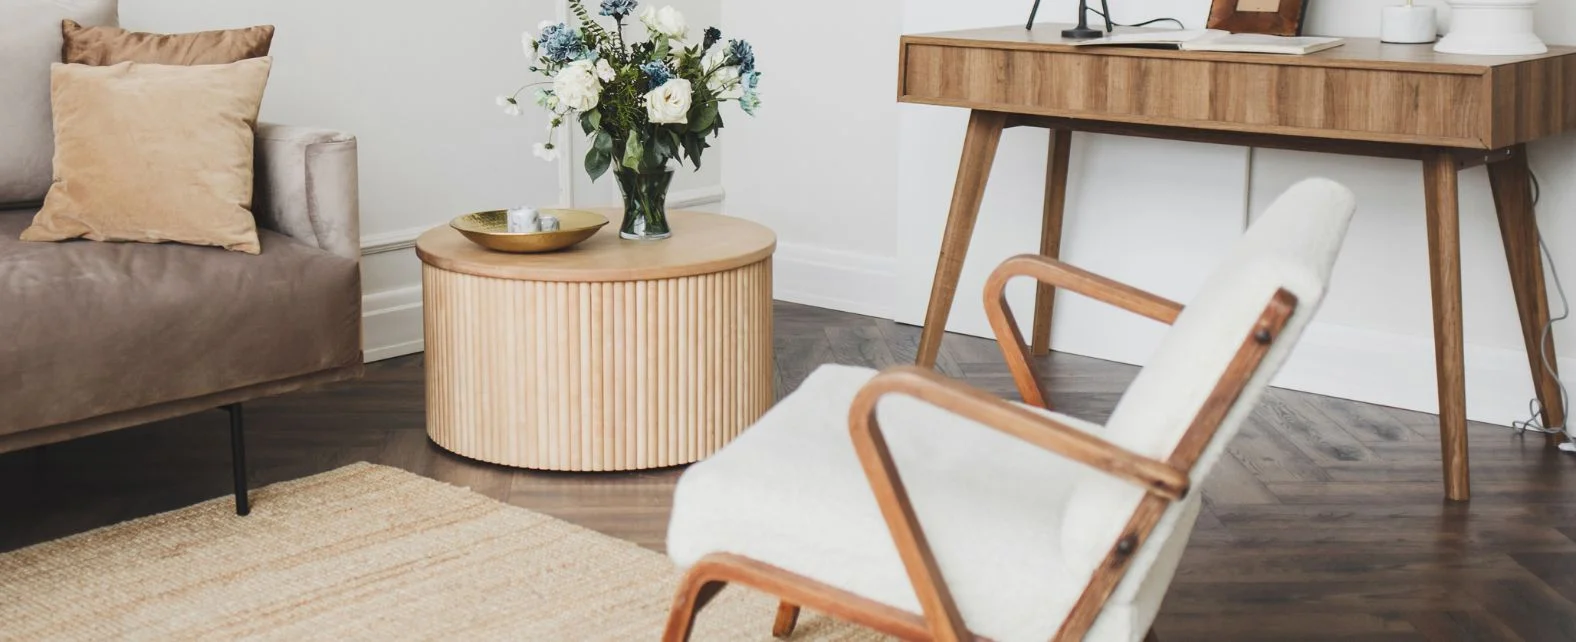 Salon design avec des meubles en bois et un tapis en jute naturel